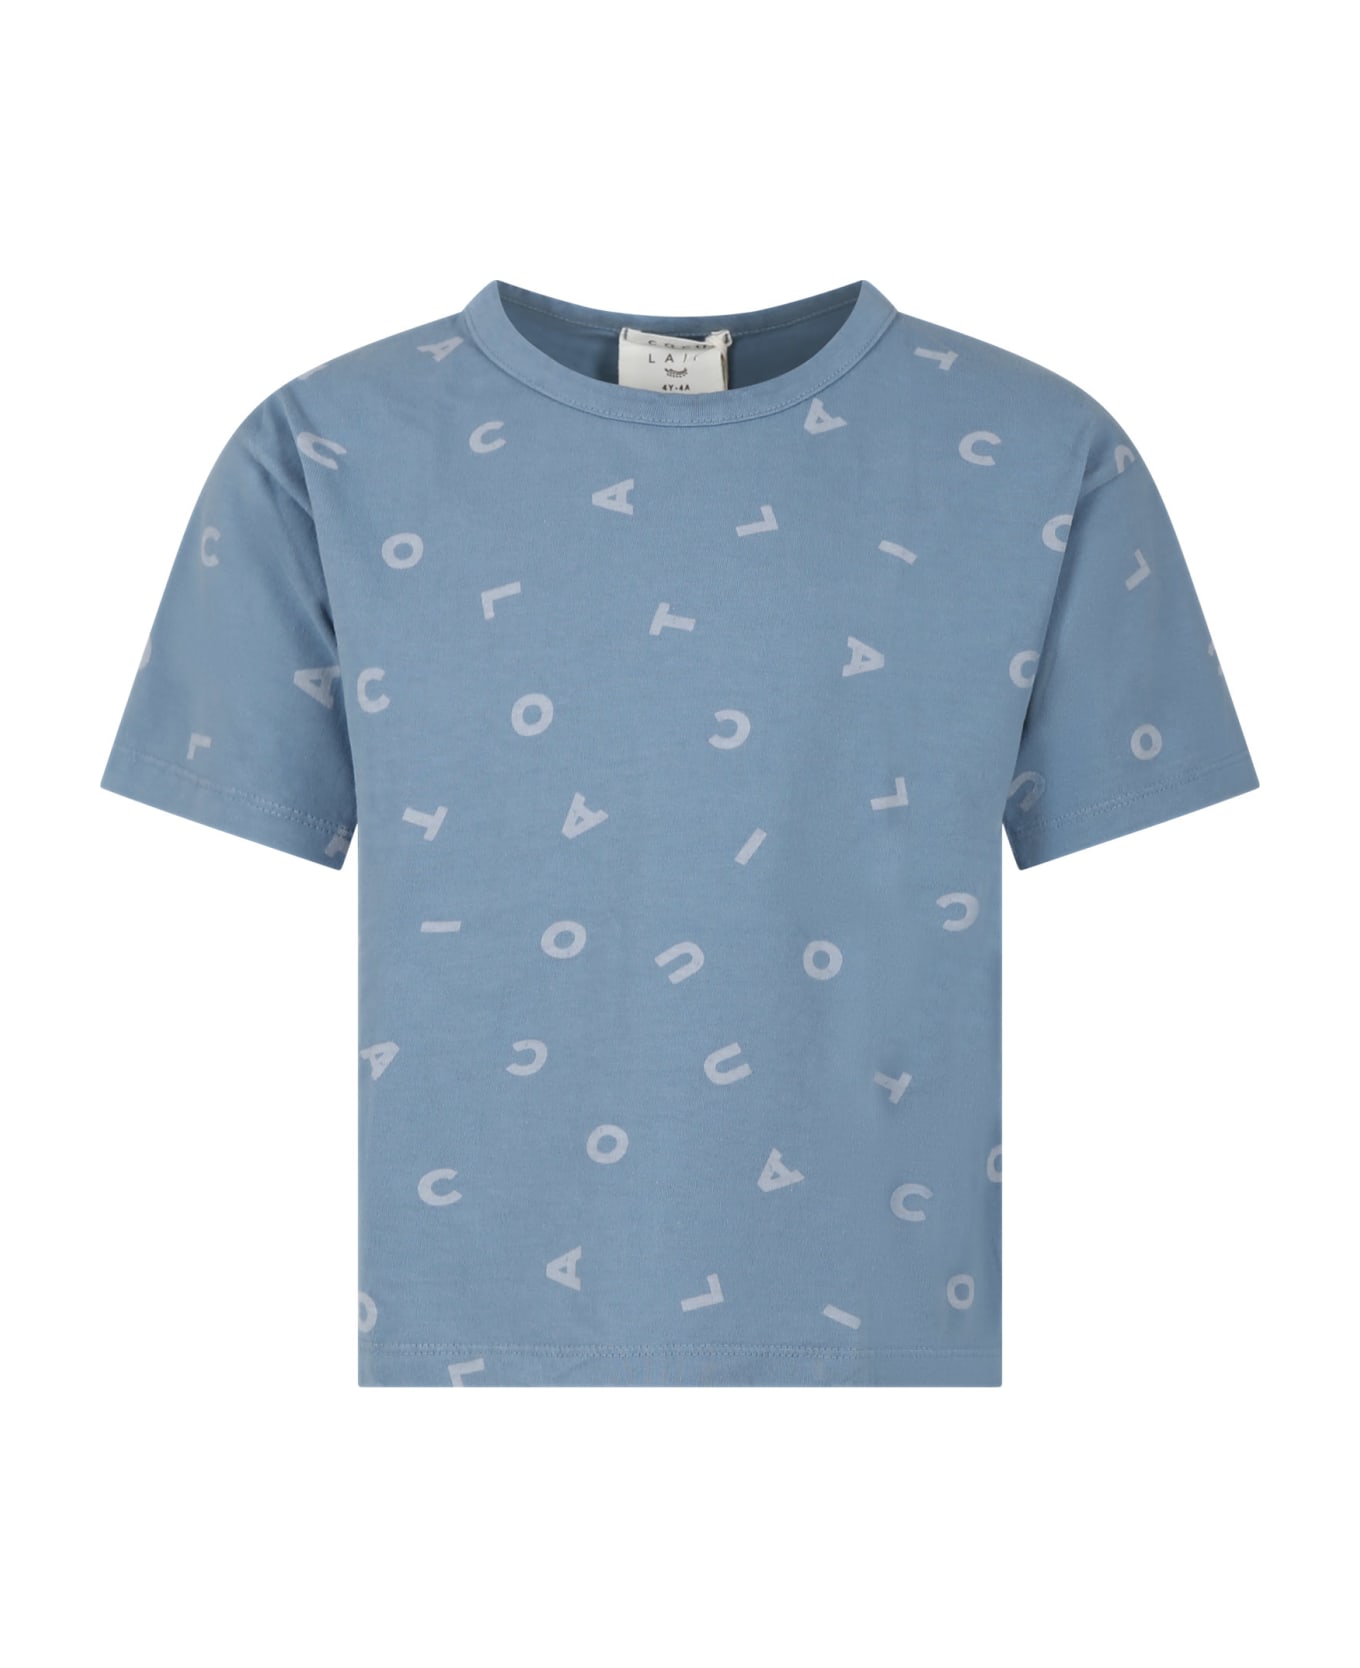 Coco Au Lait Light Blue T-shirt For Kids With Logo - Light Blue